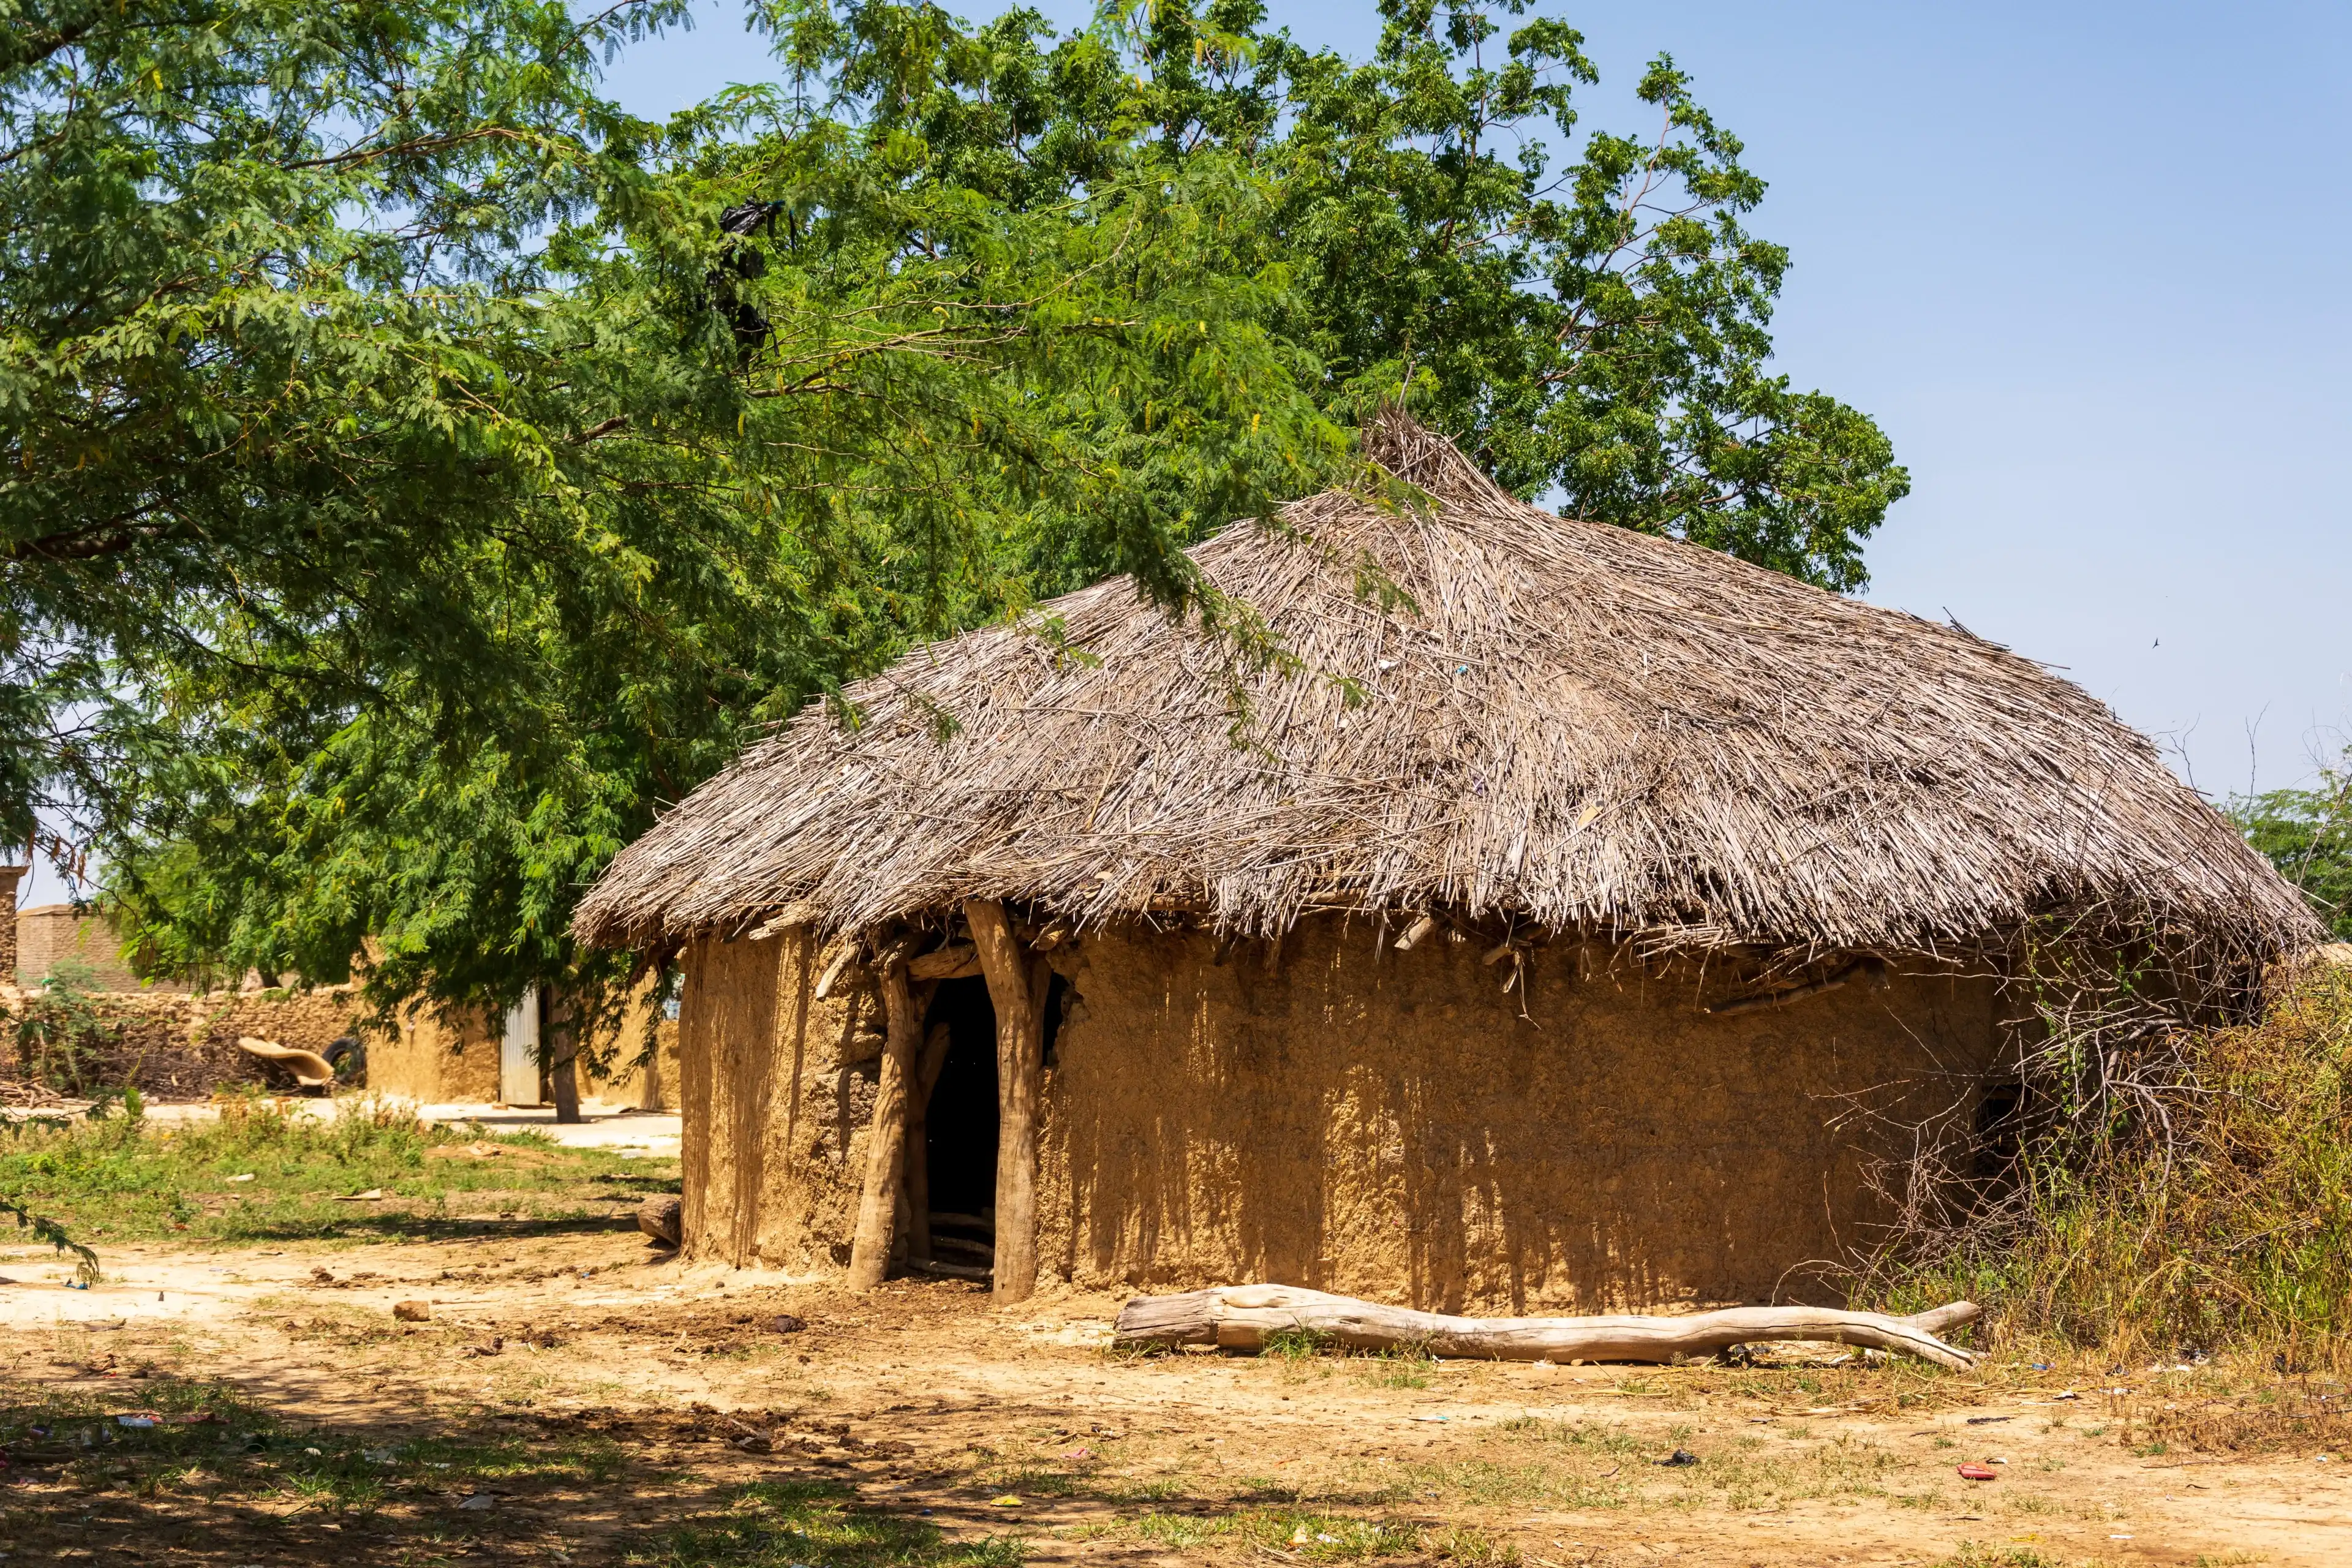 N'Djamena Chad Africa village shed hut tree barrack